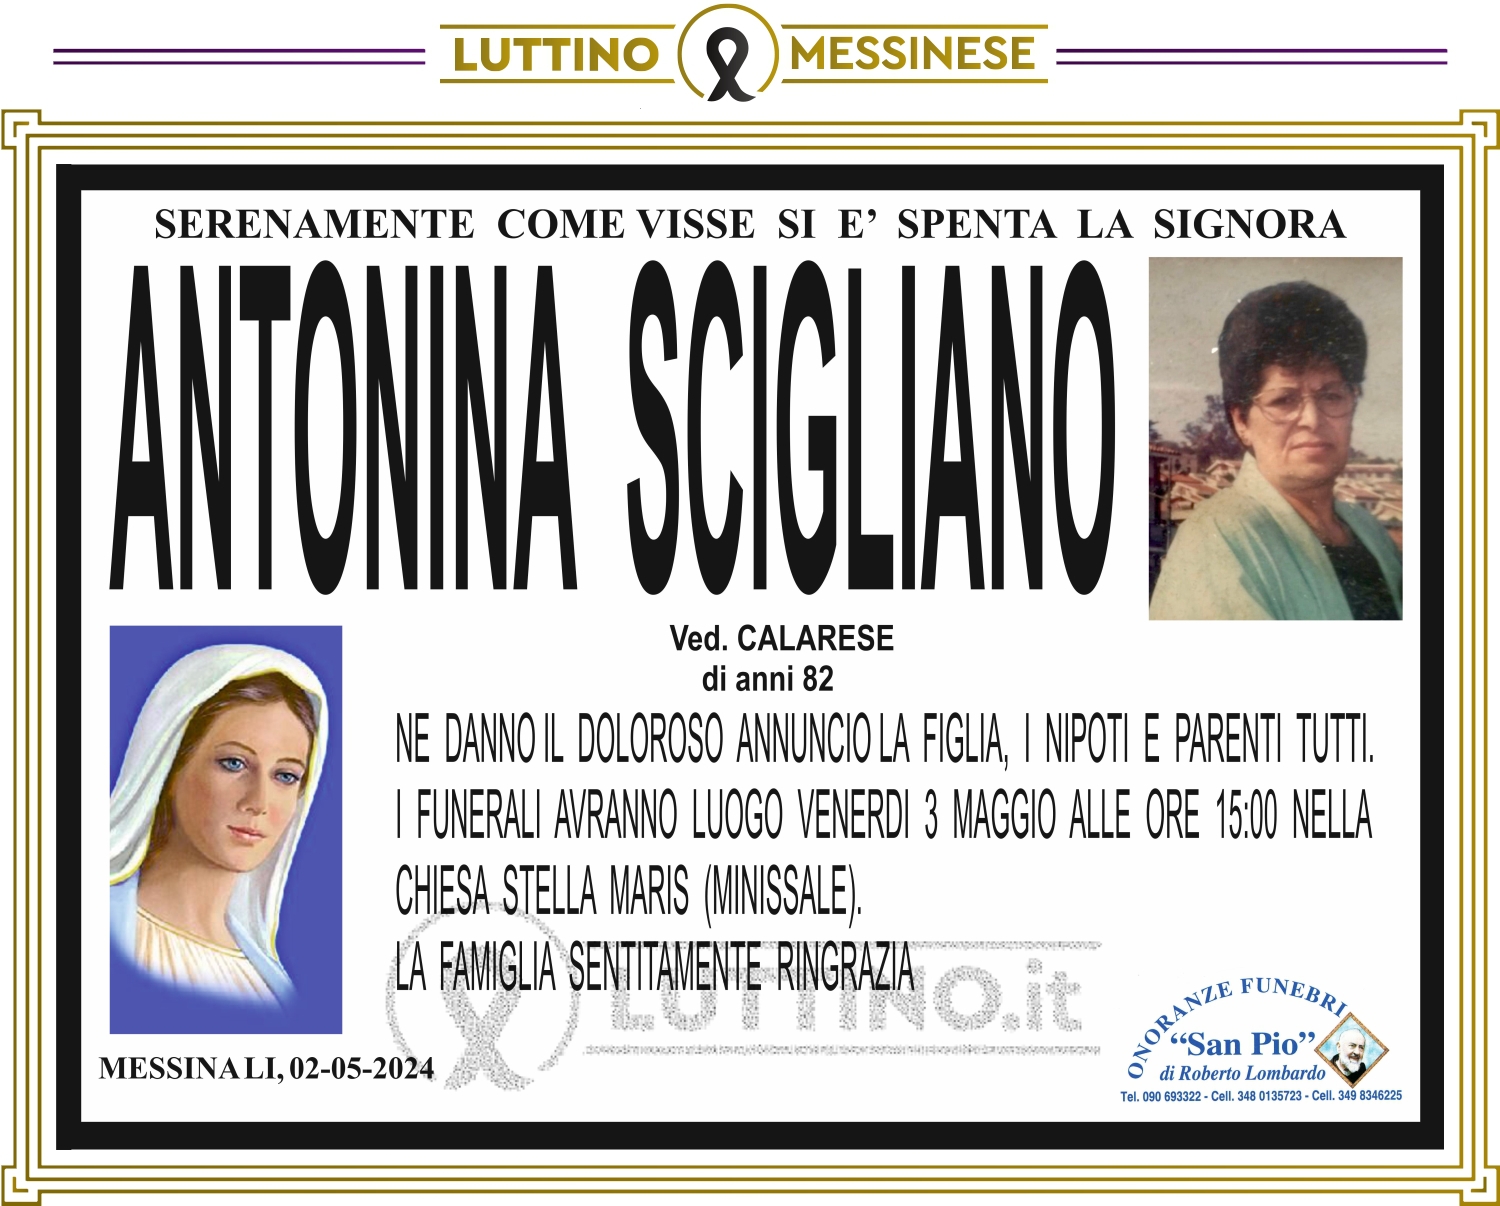 Antonina Scigliano